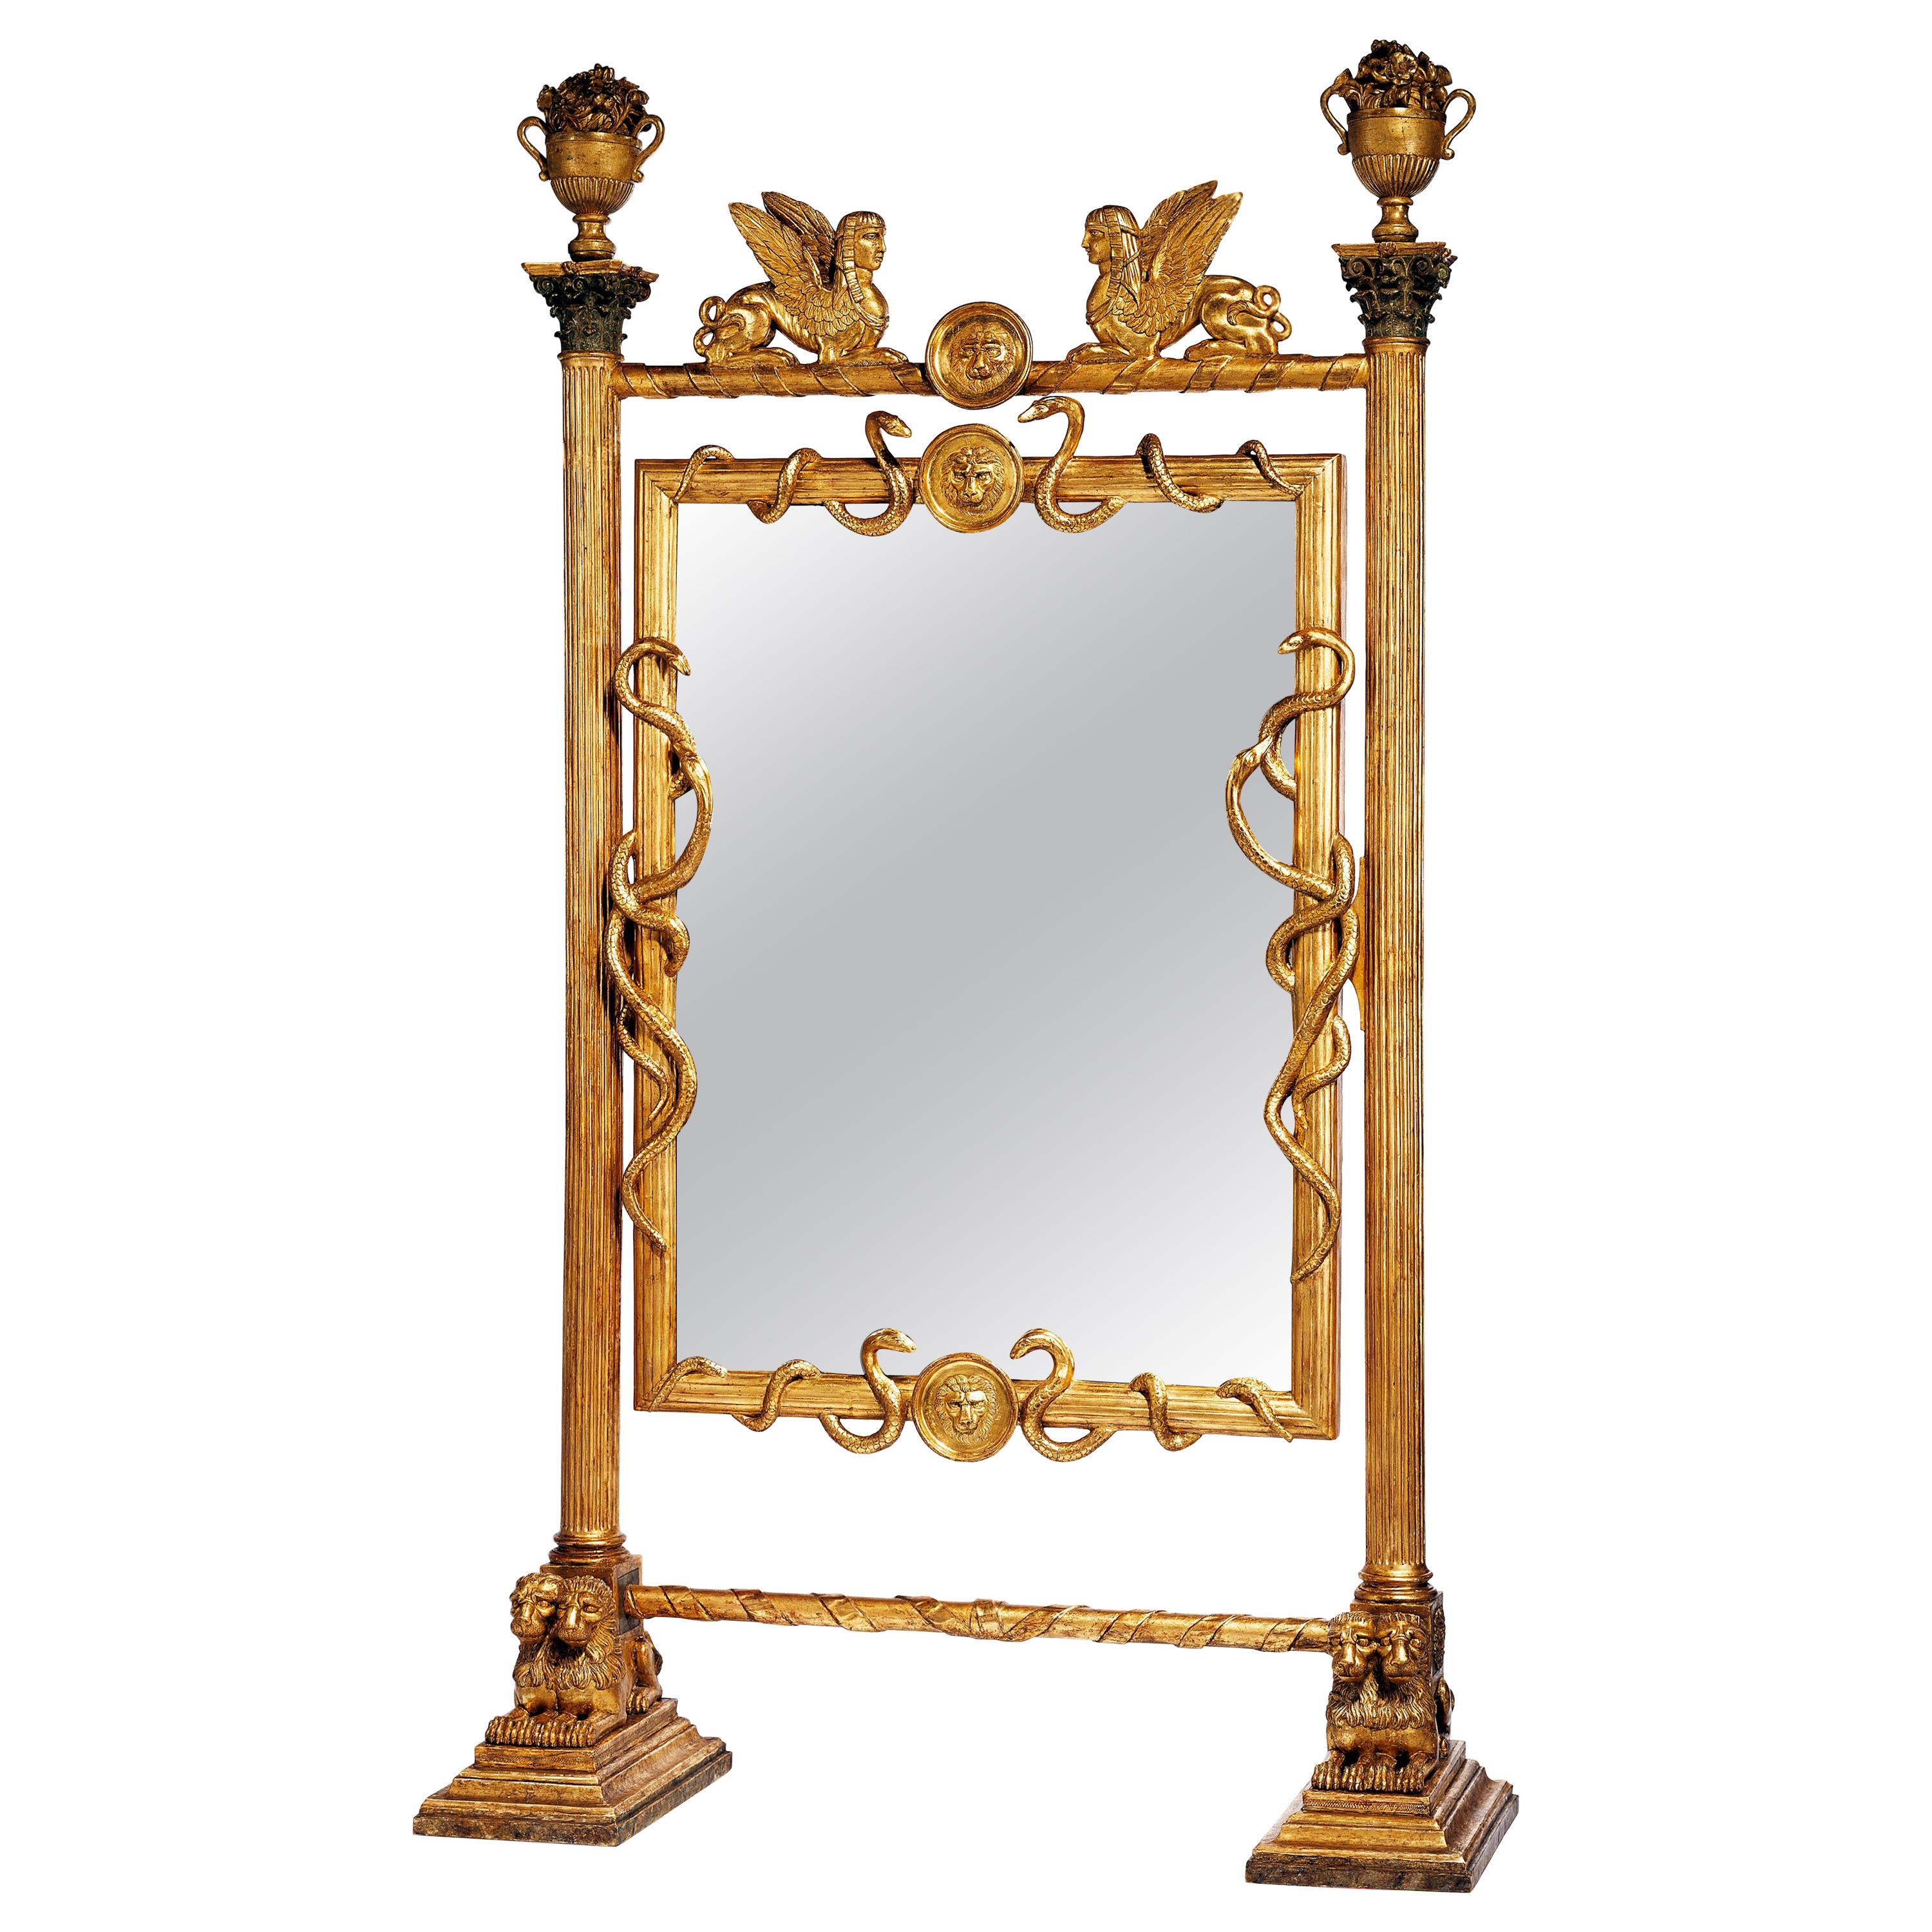 Außergewöhnlicher Empire-Cheval-Spiegel des frühen 19. Jahrhunderts, Russland oder Schweden